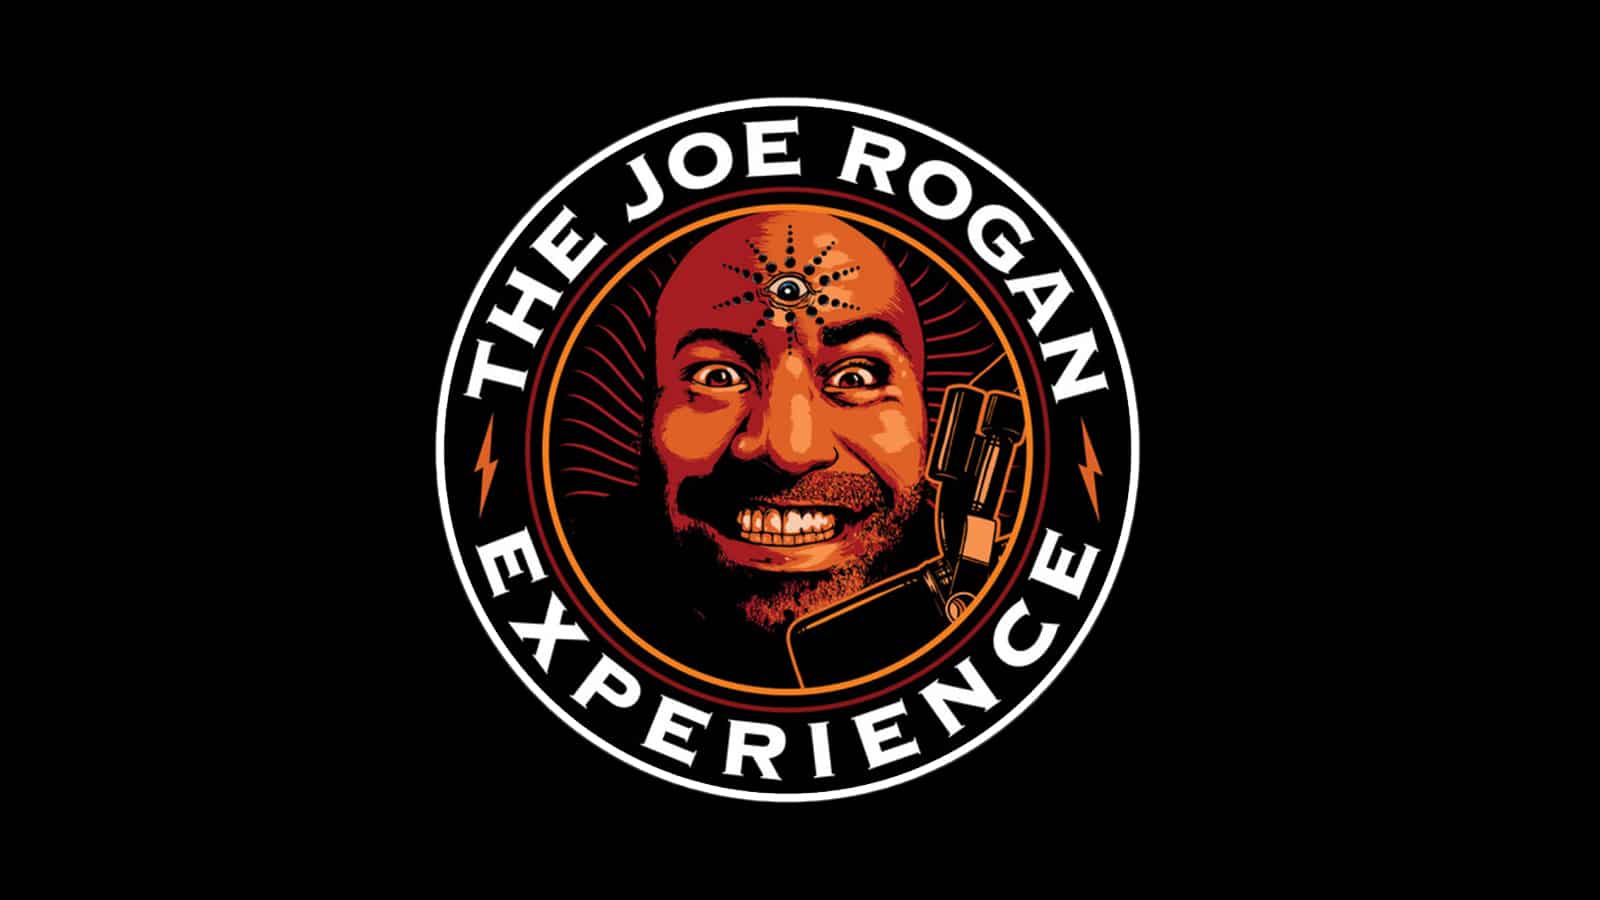 Joe Rogan Experience Podcast logo